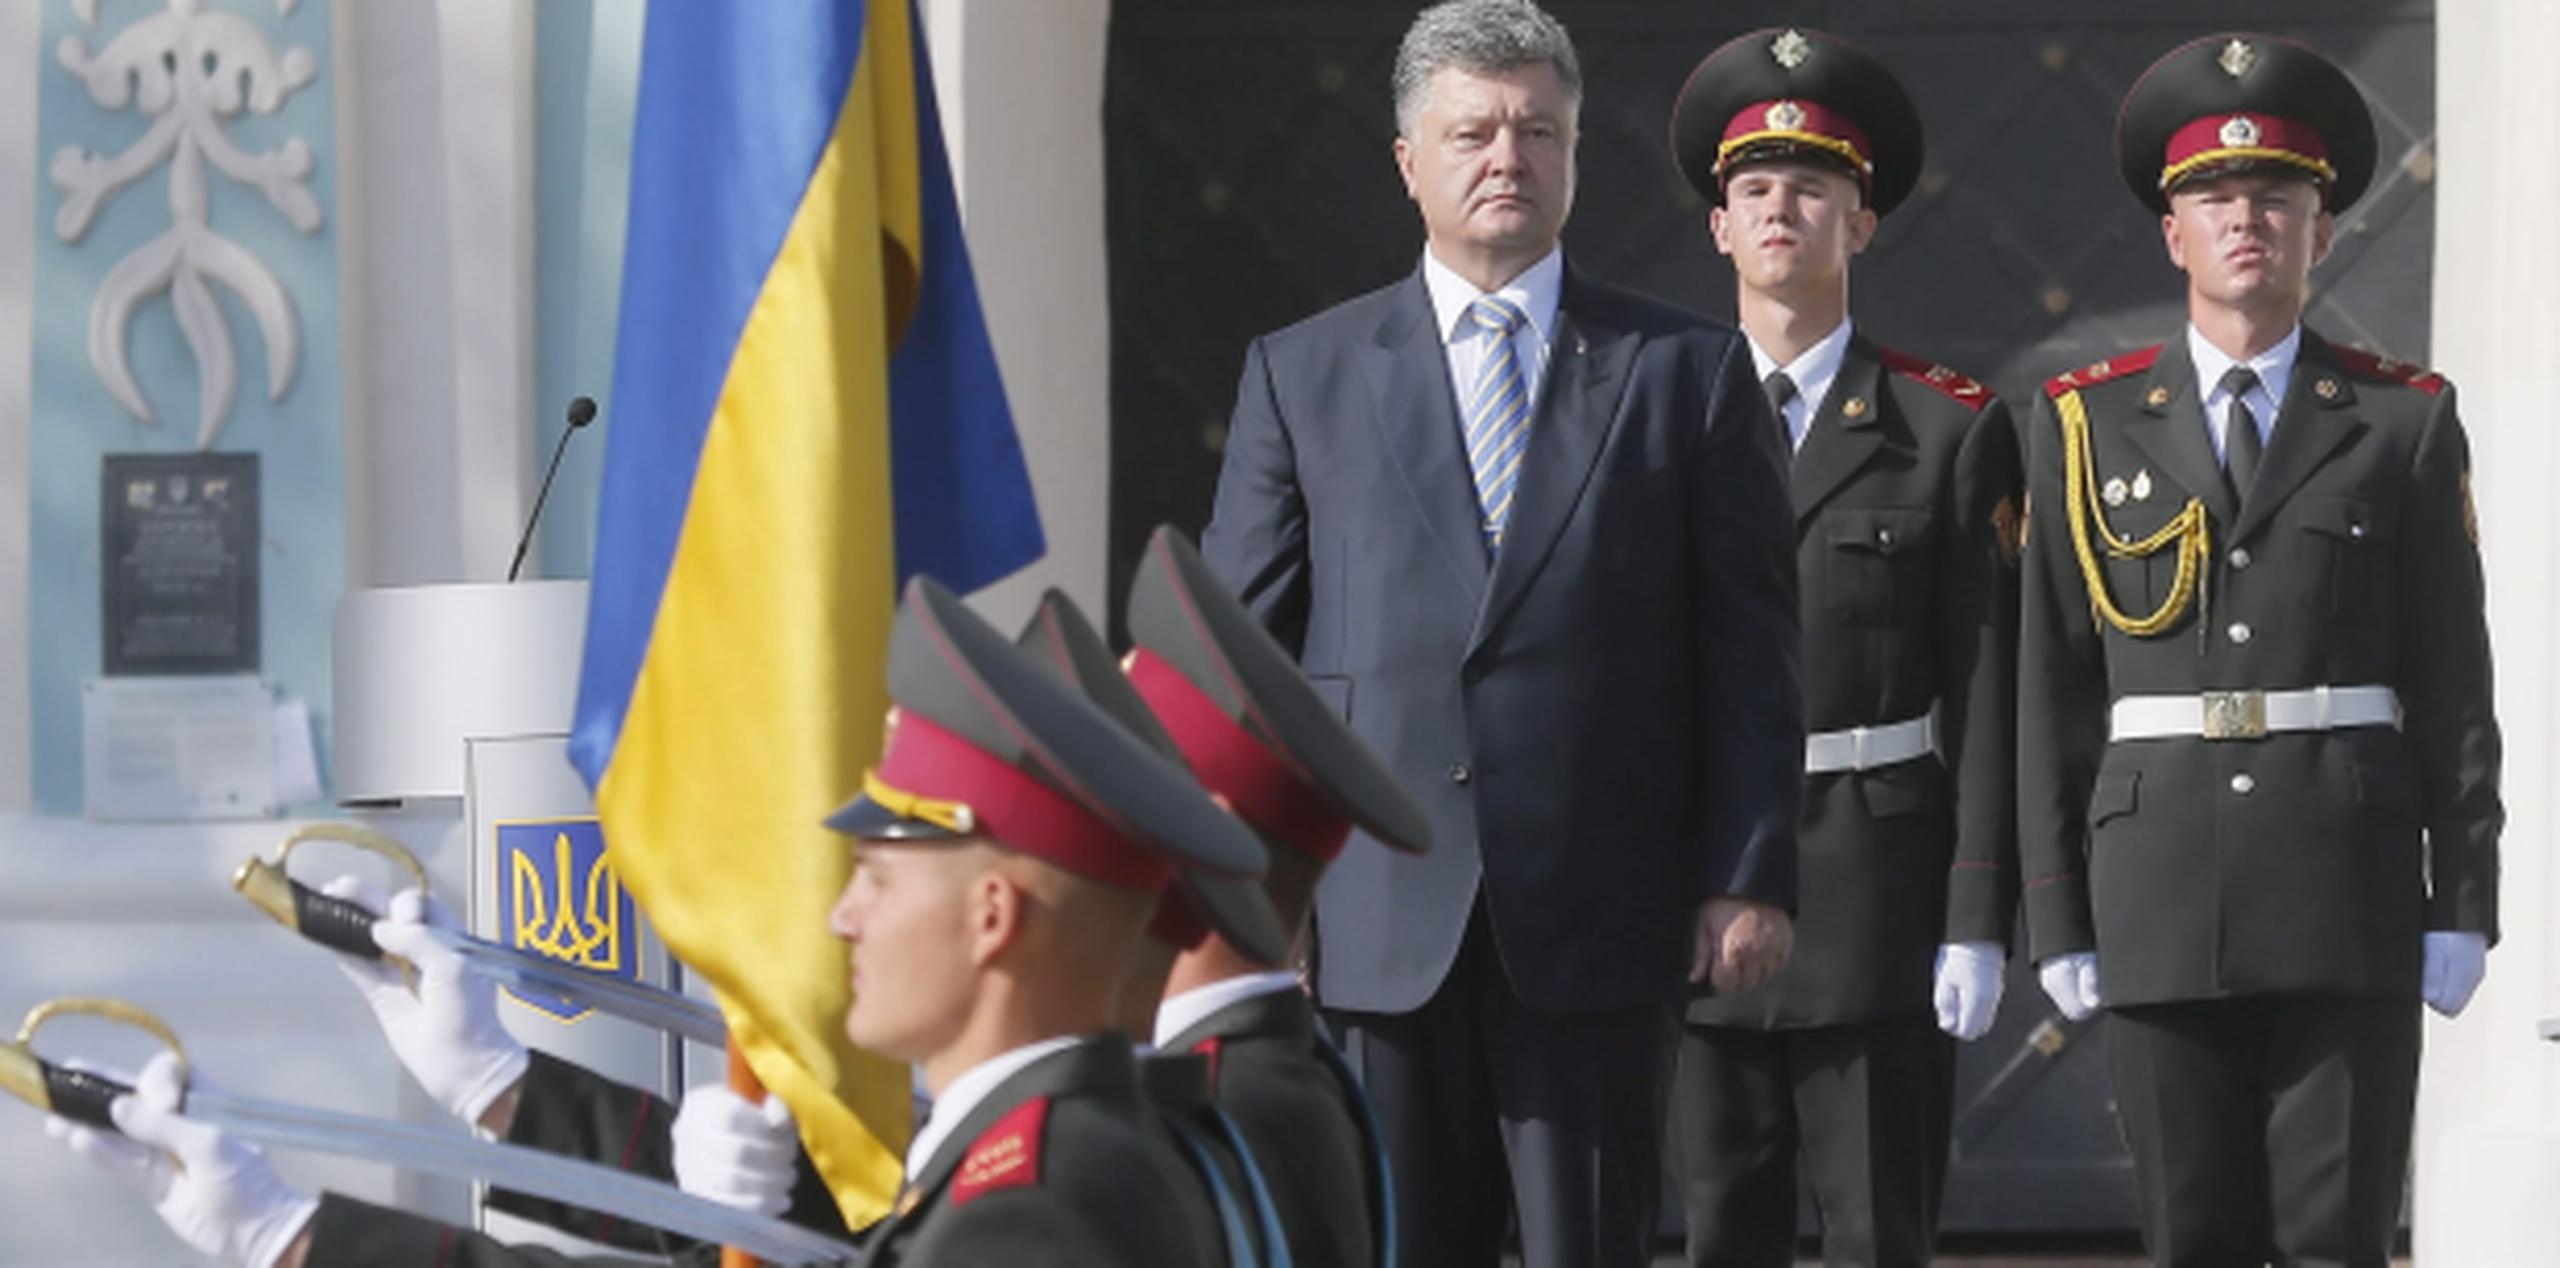 El presidente Petro Poroshenko, al centro, participa de una guardia de honor durante el Día de la Bandera, actividad que precede la celebración mañana de la independencia de Ucrania. (EFE)